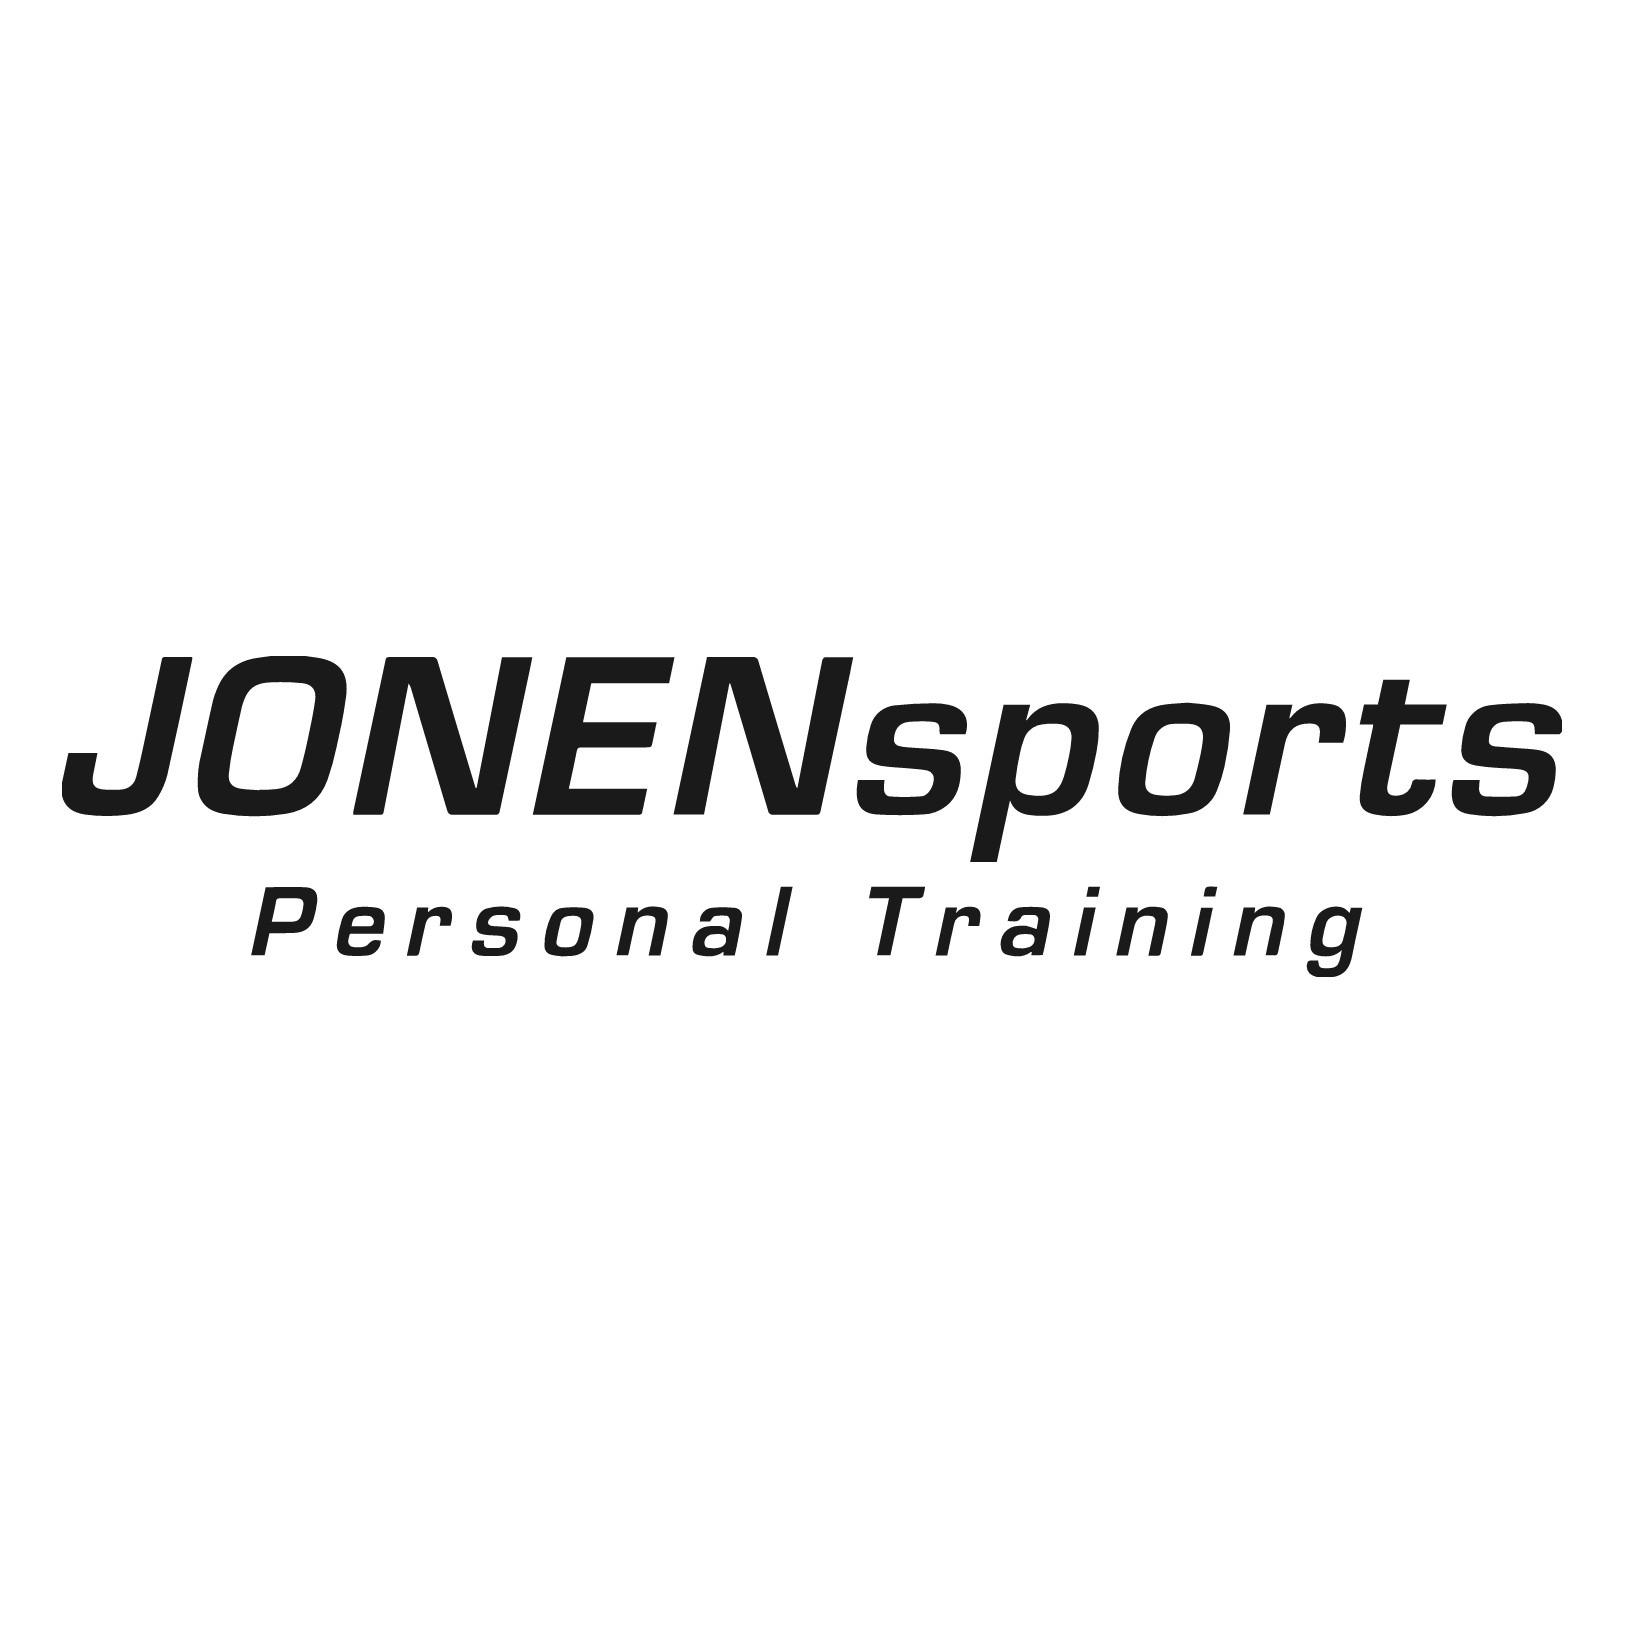 JONENsports - Personal Training by Marc-Alexander Jonen in Düsseldorf - Logo